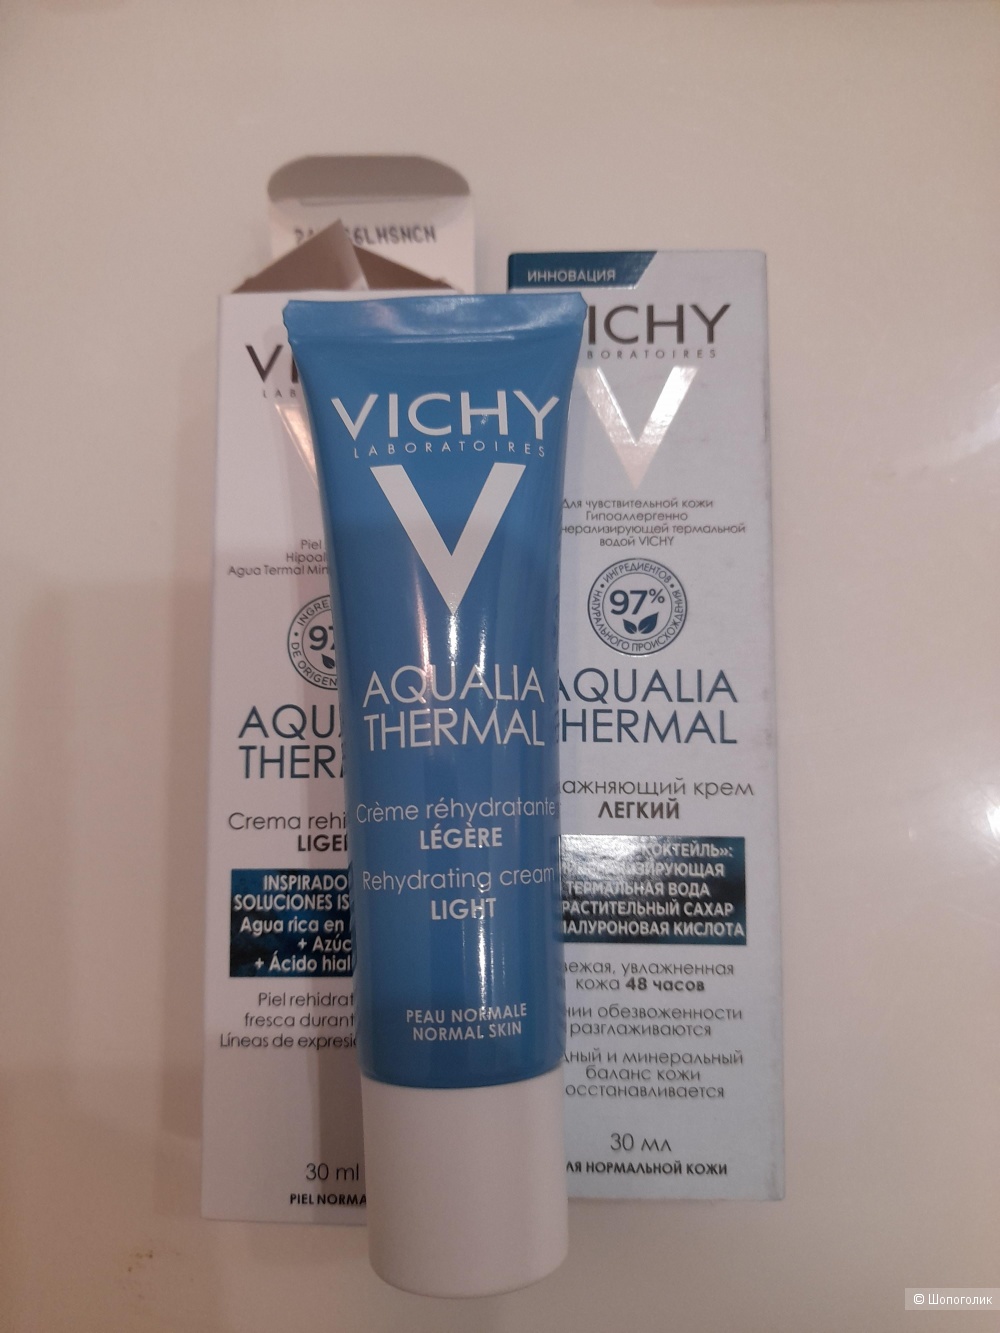 Vichy Aqualia Thermal, 30ml